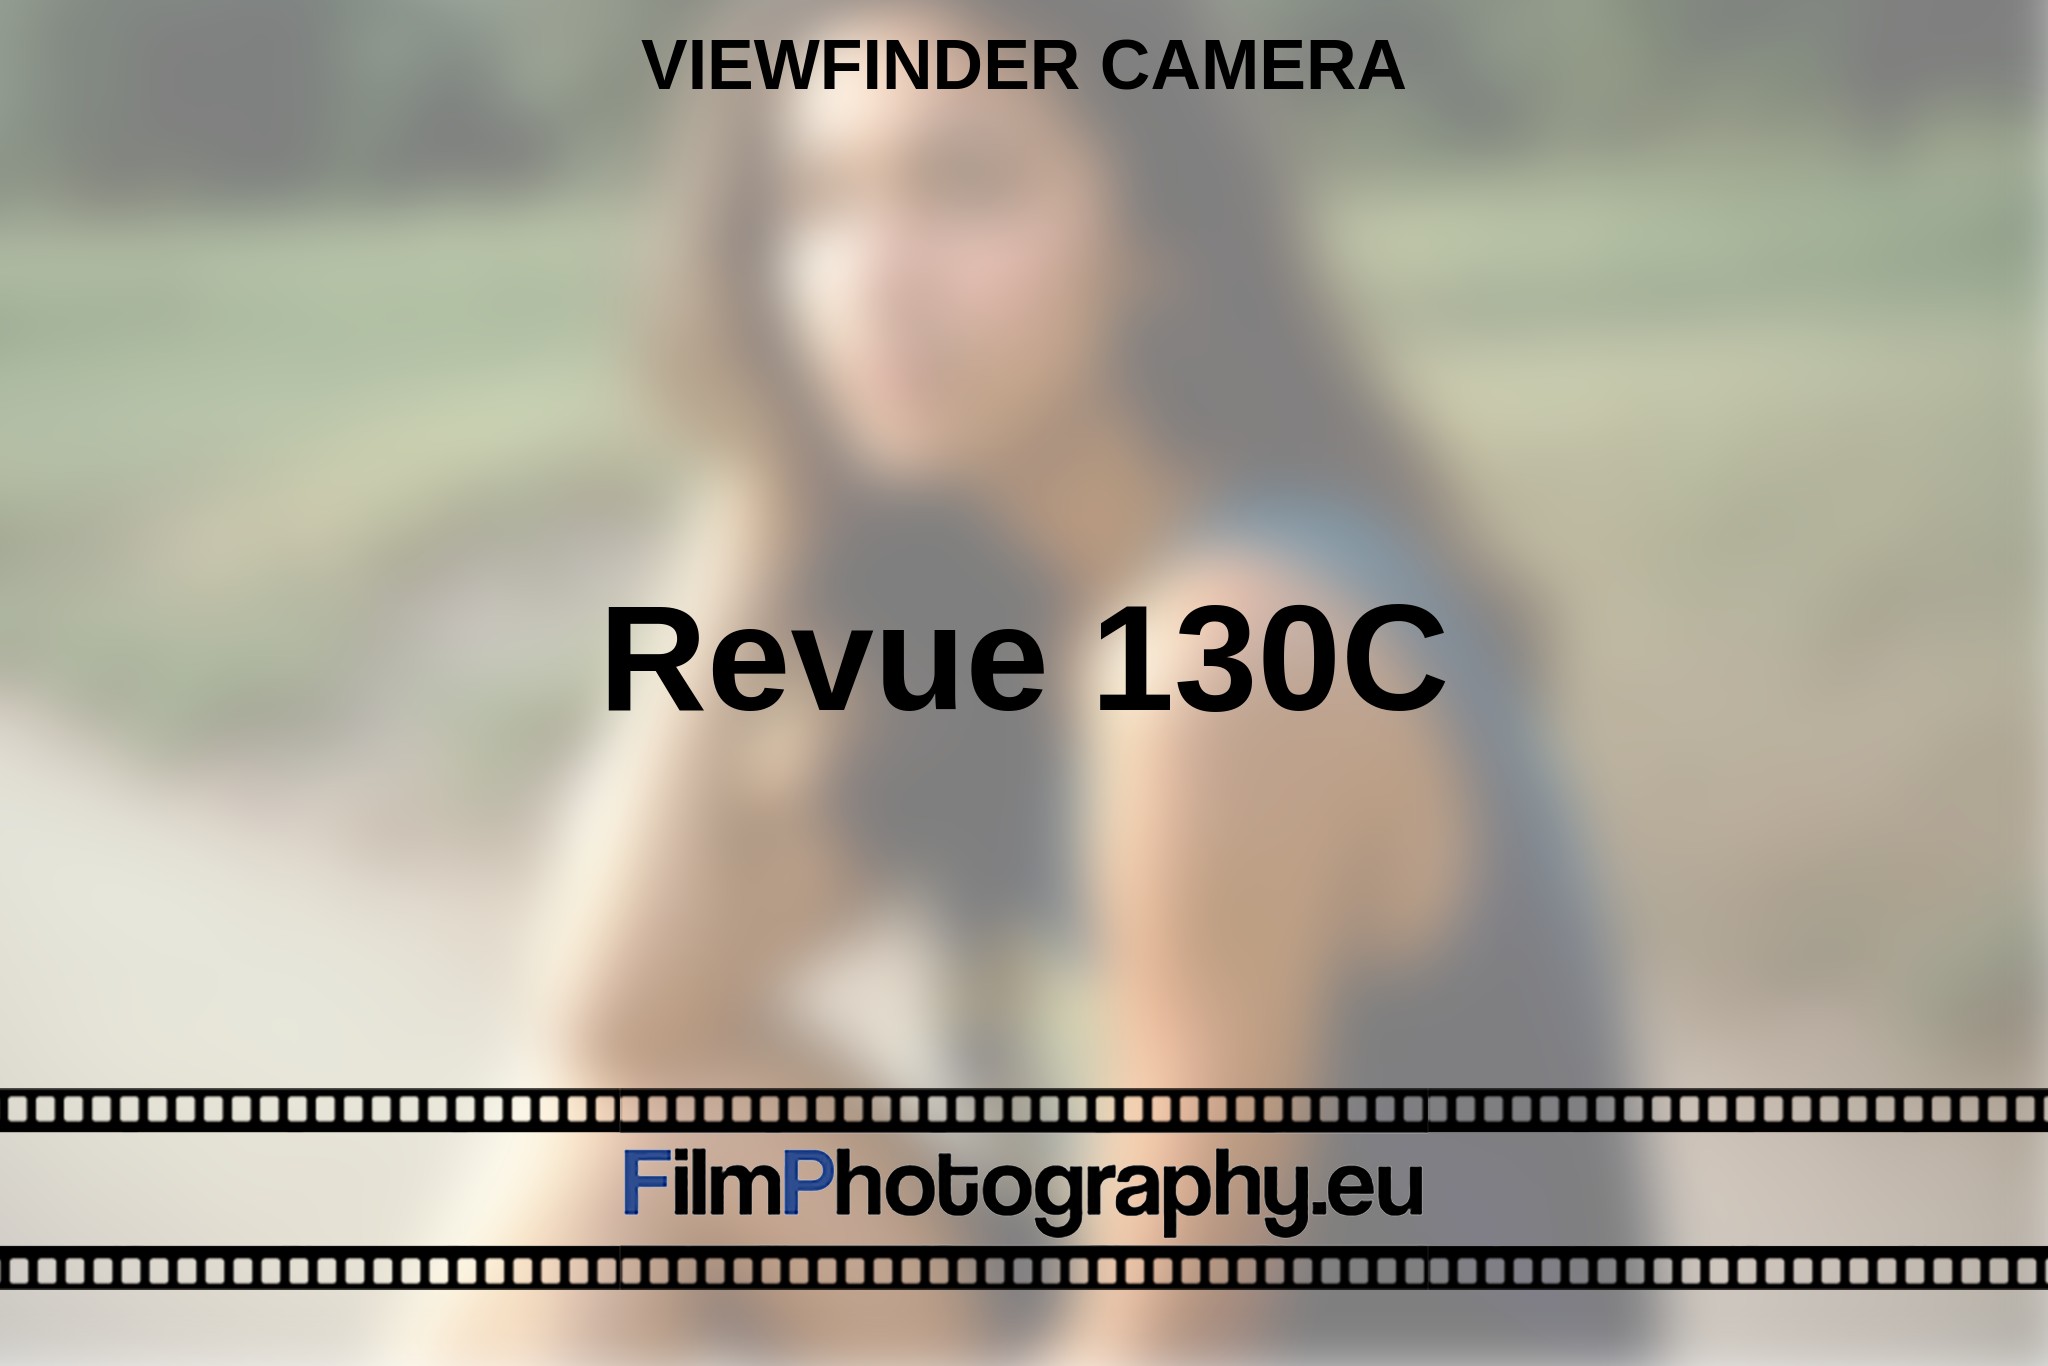 revue-130c-viewfinder-camera-en-bnv.jpg